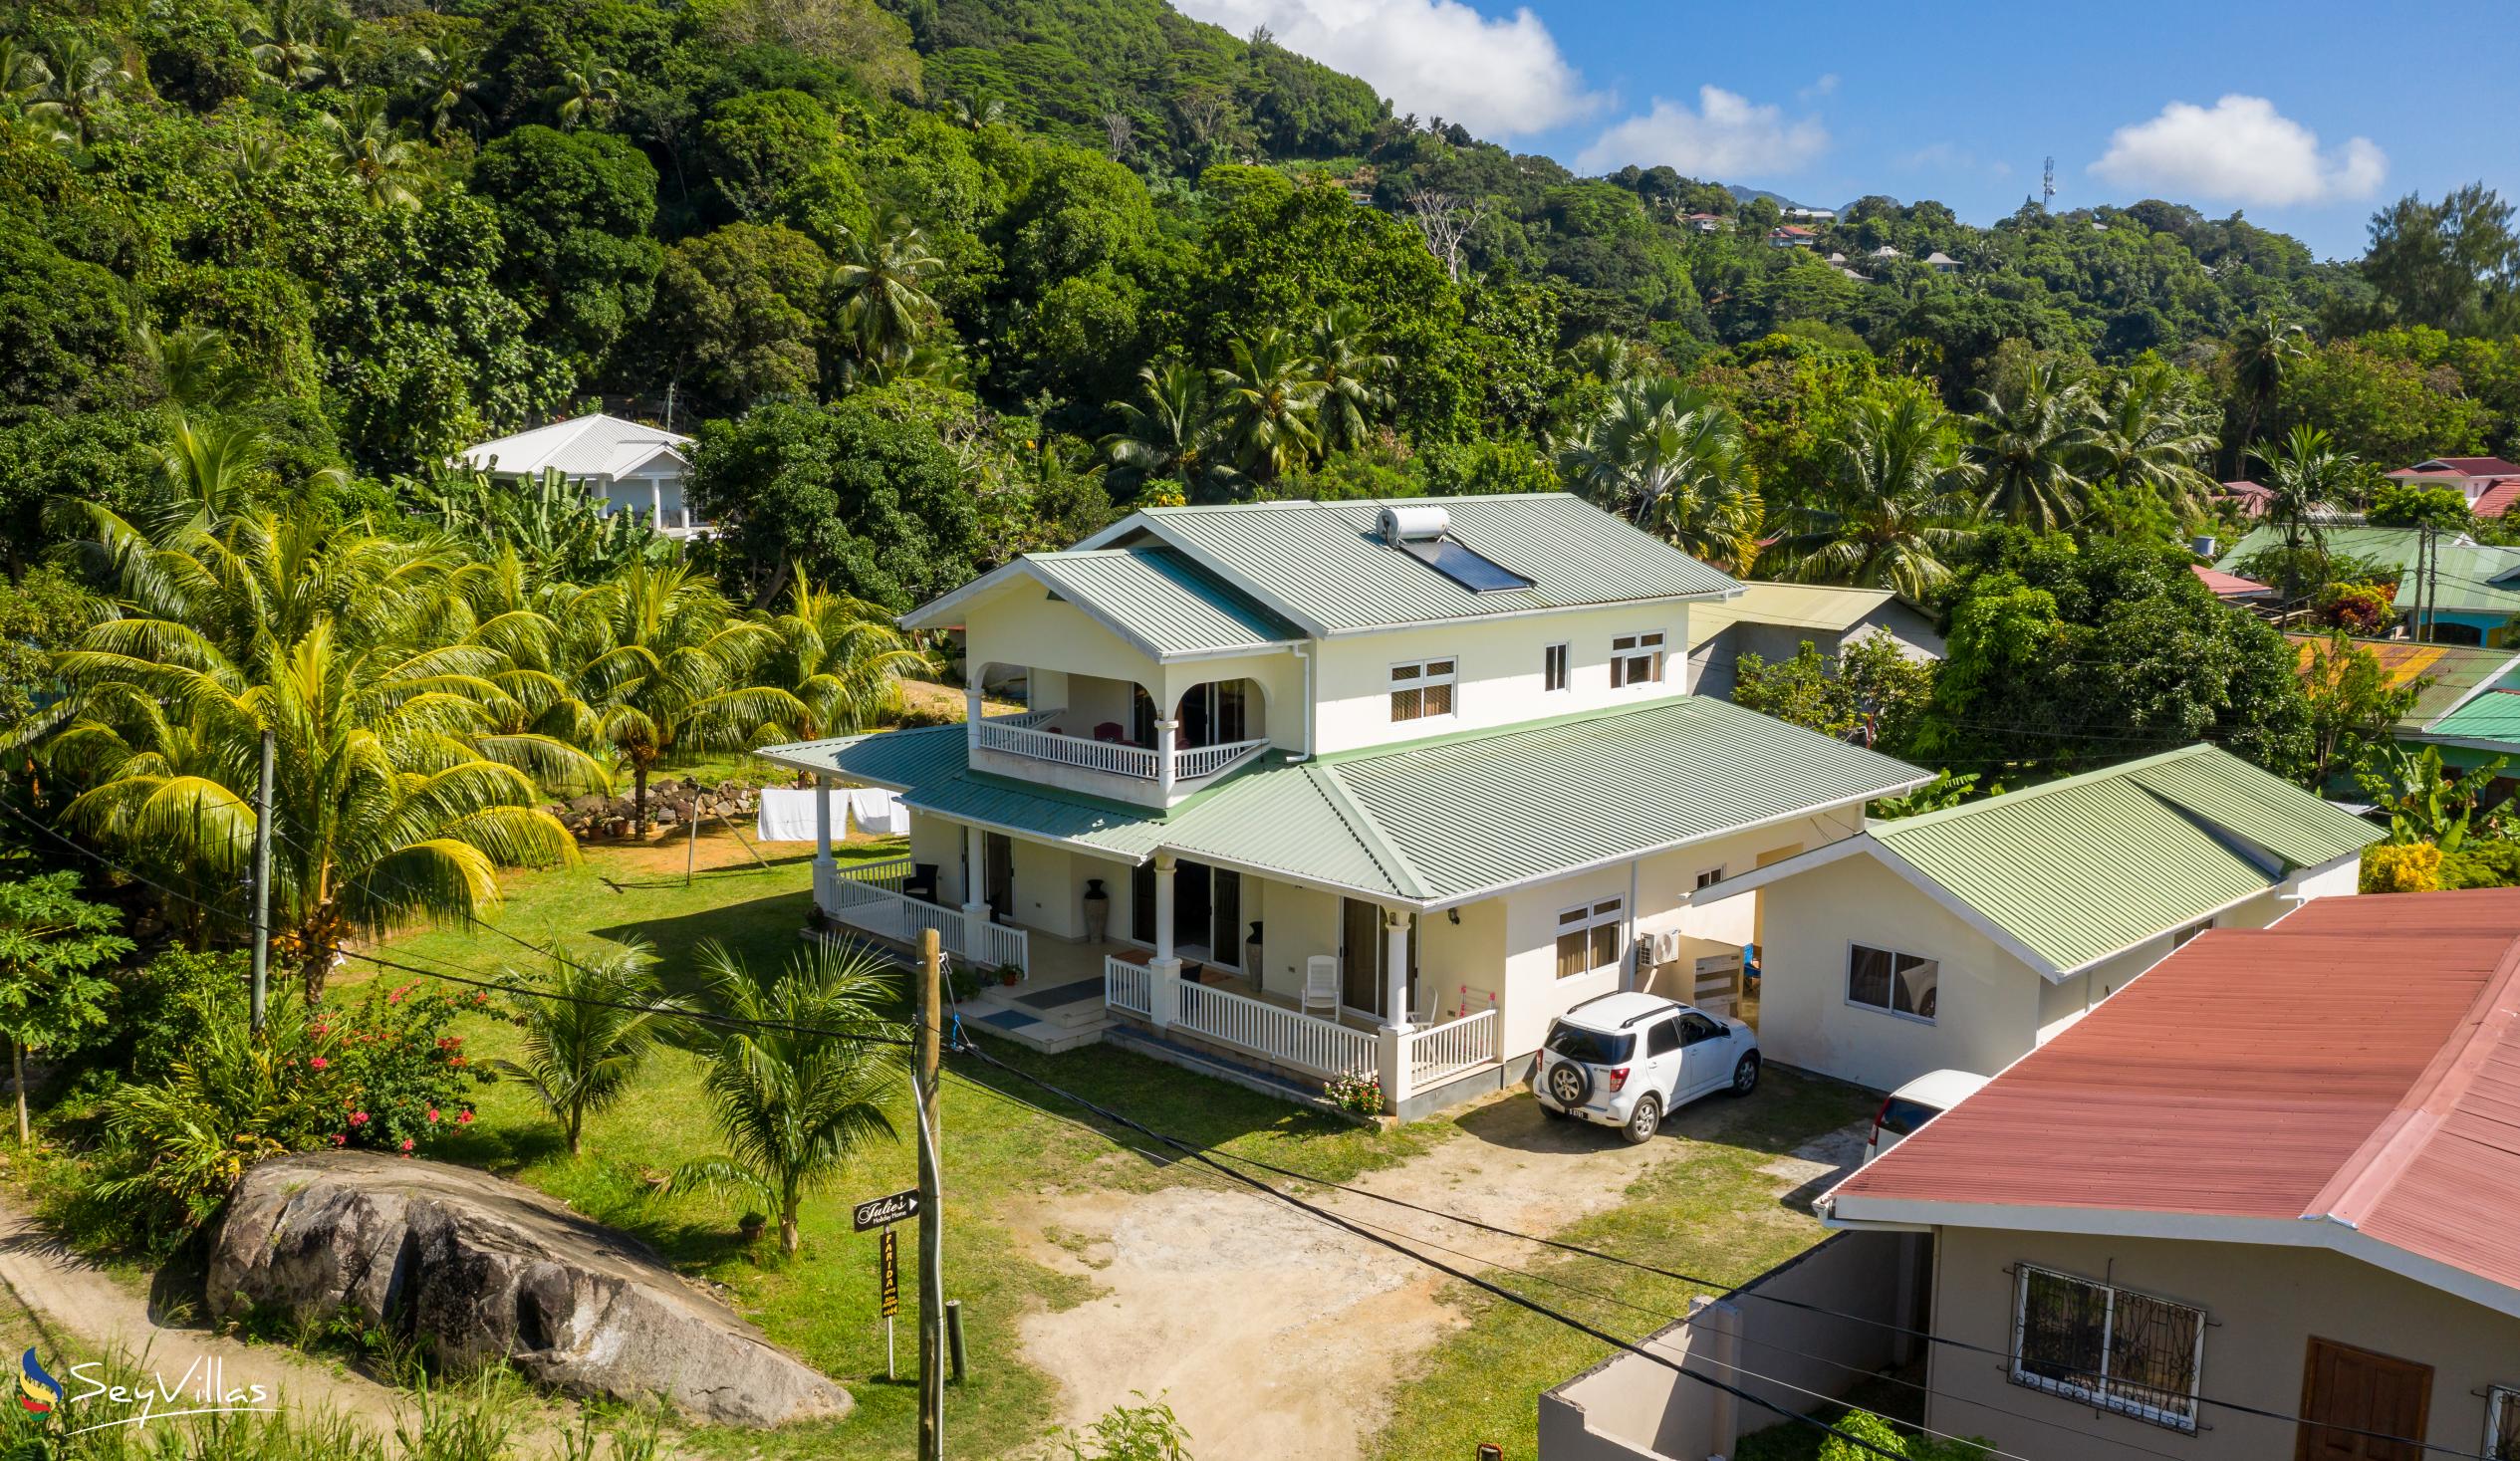 Foto 3: Julie's Holiday Home - Extérieur - Mahé (Seychelles)